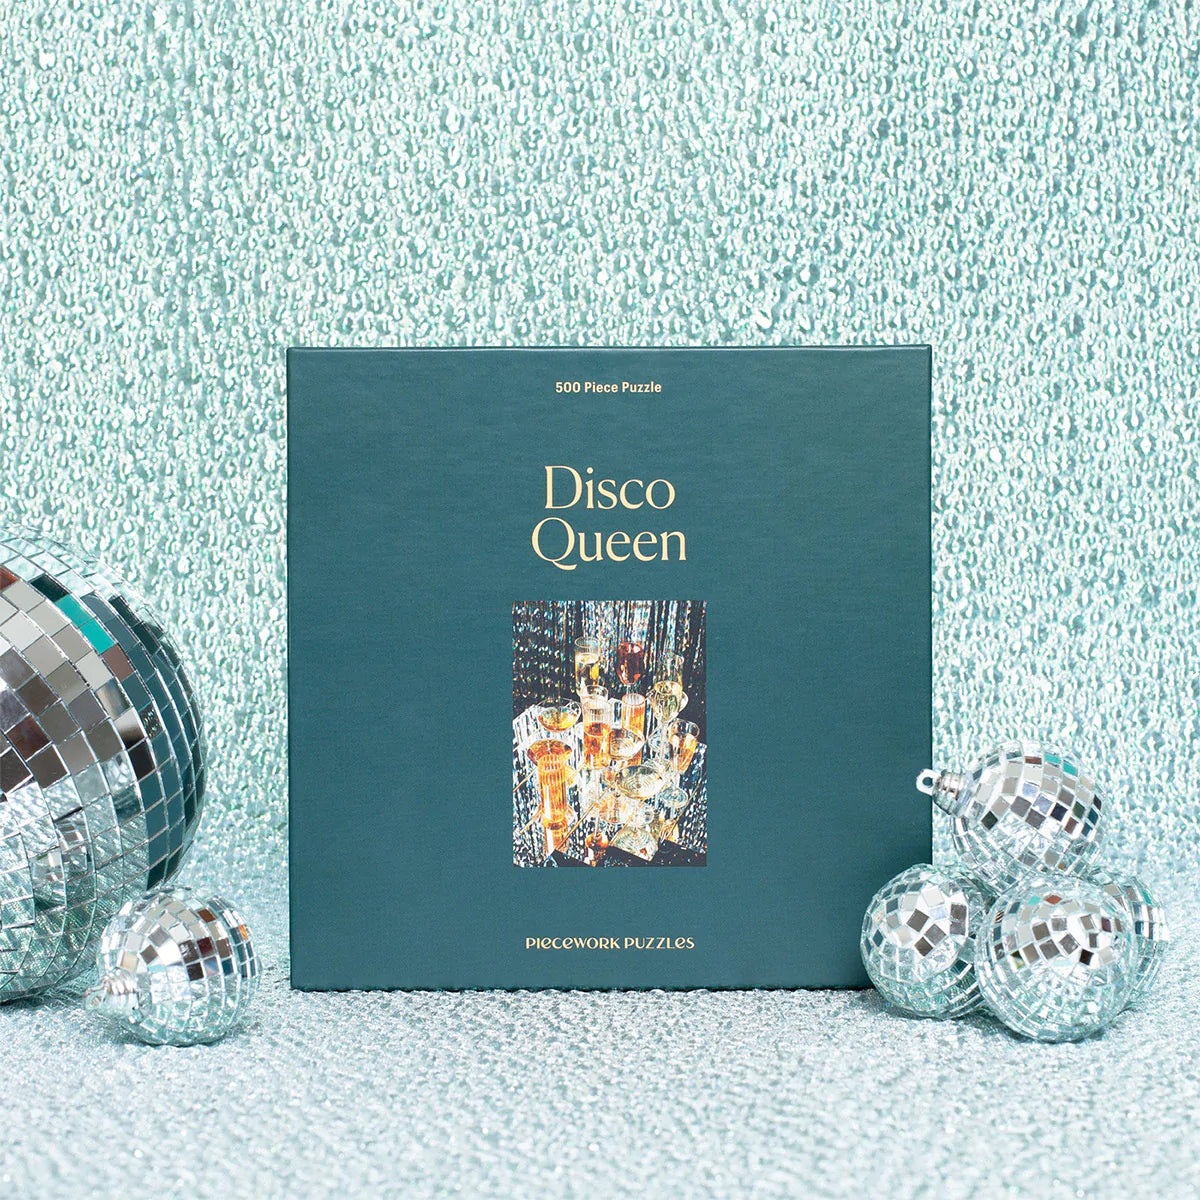 Puzzle 500 pieces, Disco Queen